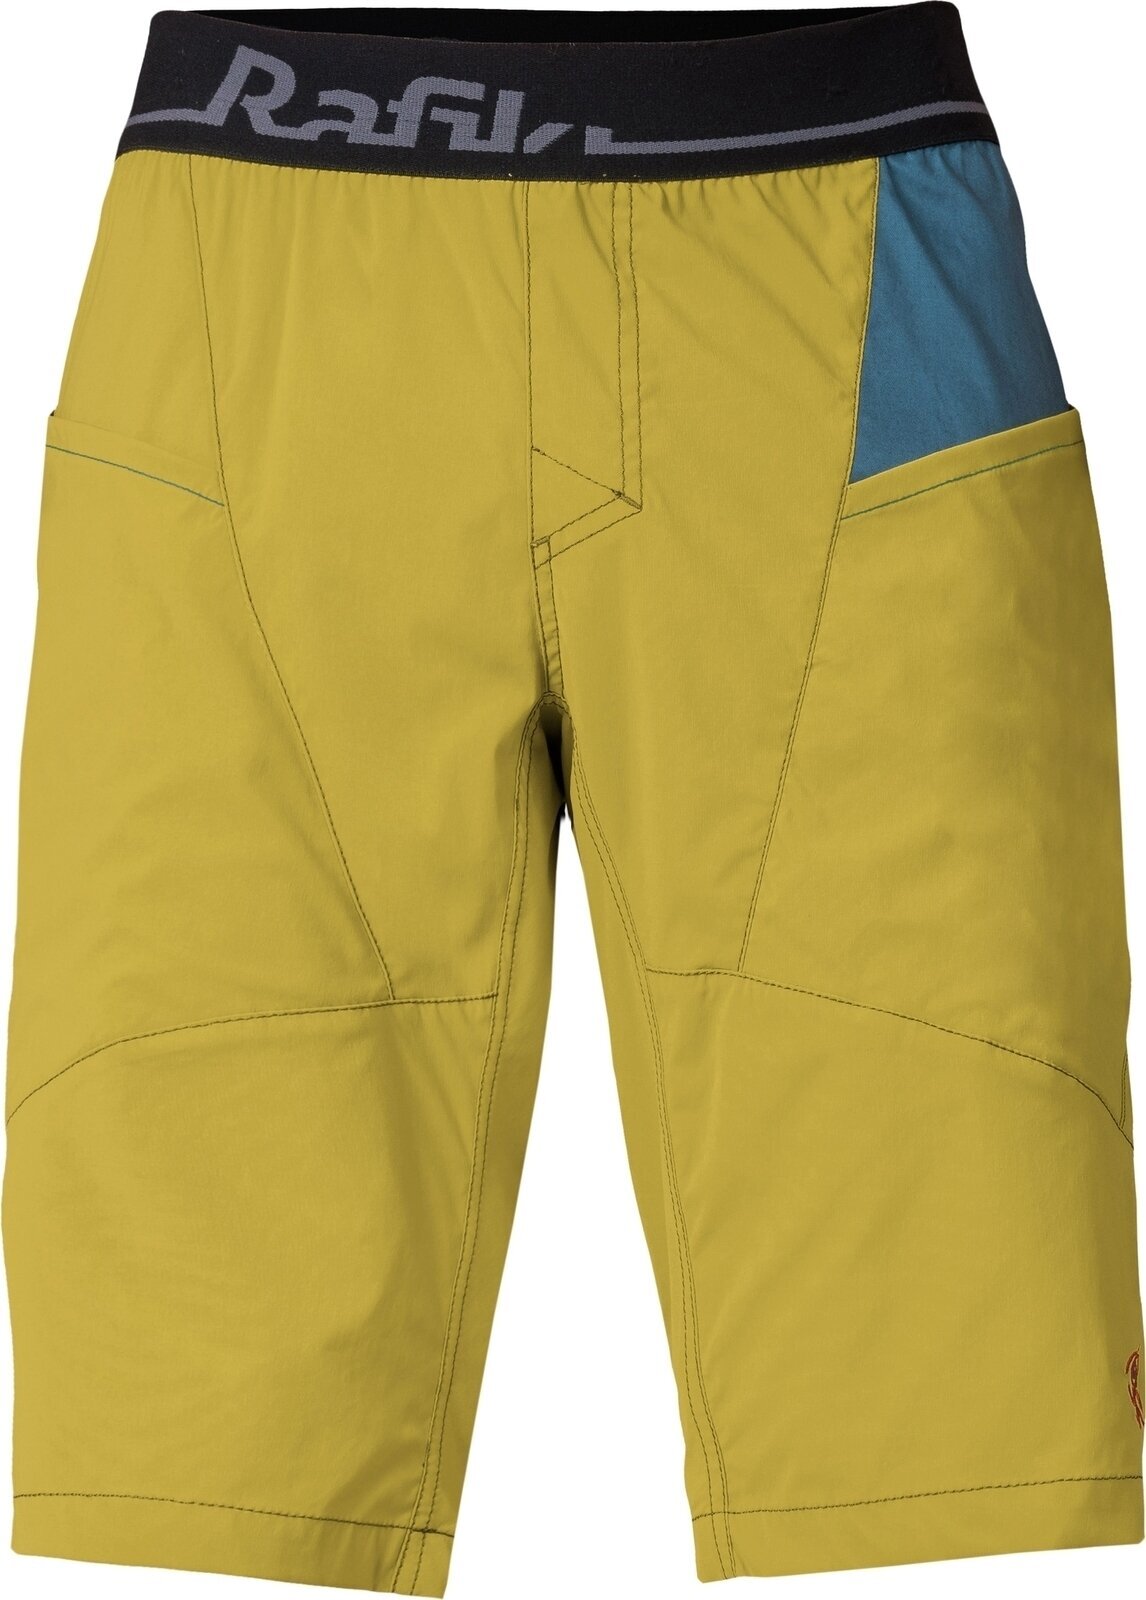 Outdoorové šortky Rafiki Megos Man Shorts Cress Green/Stargazer S Outdoorové šortky